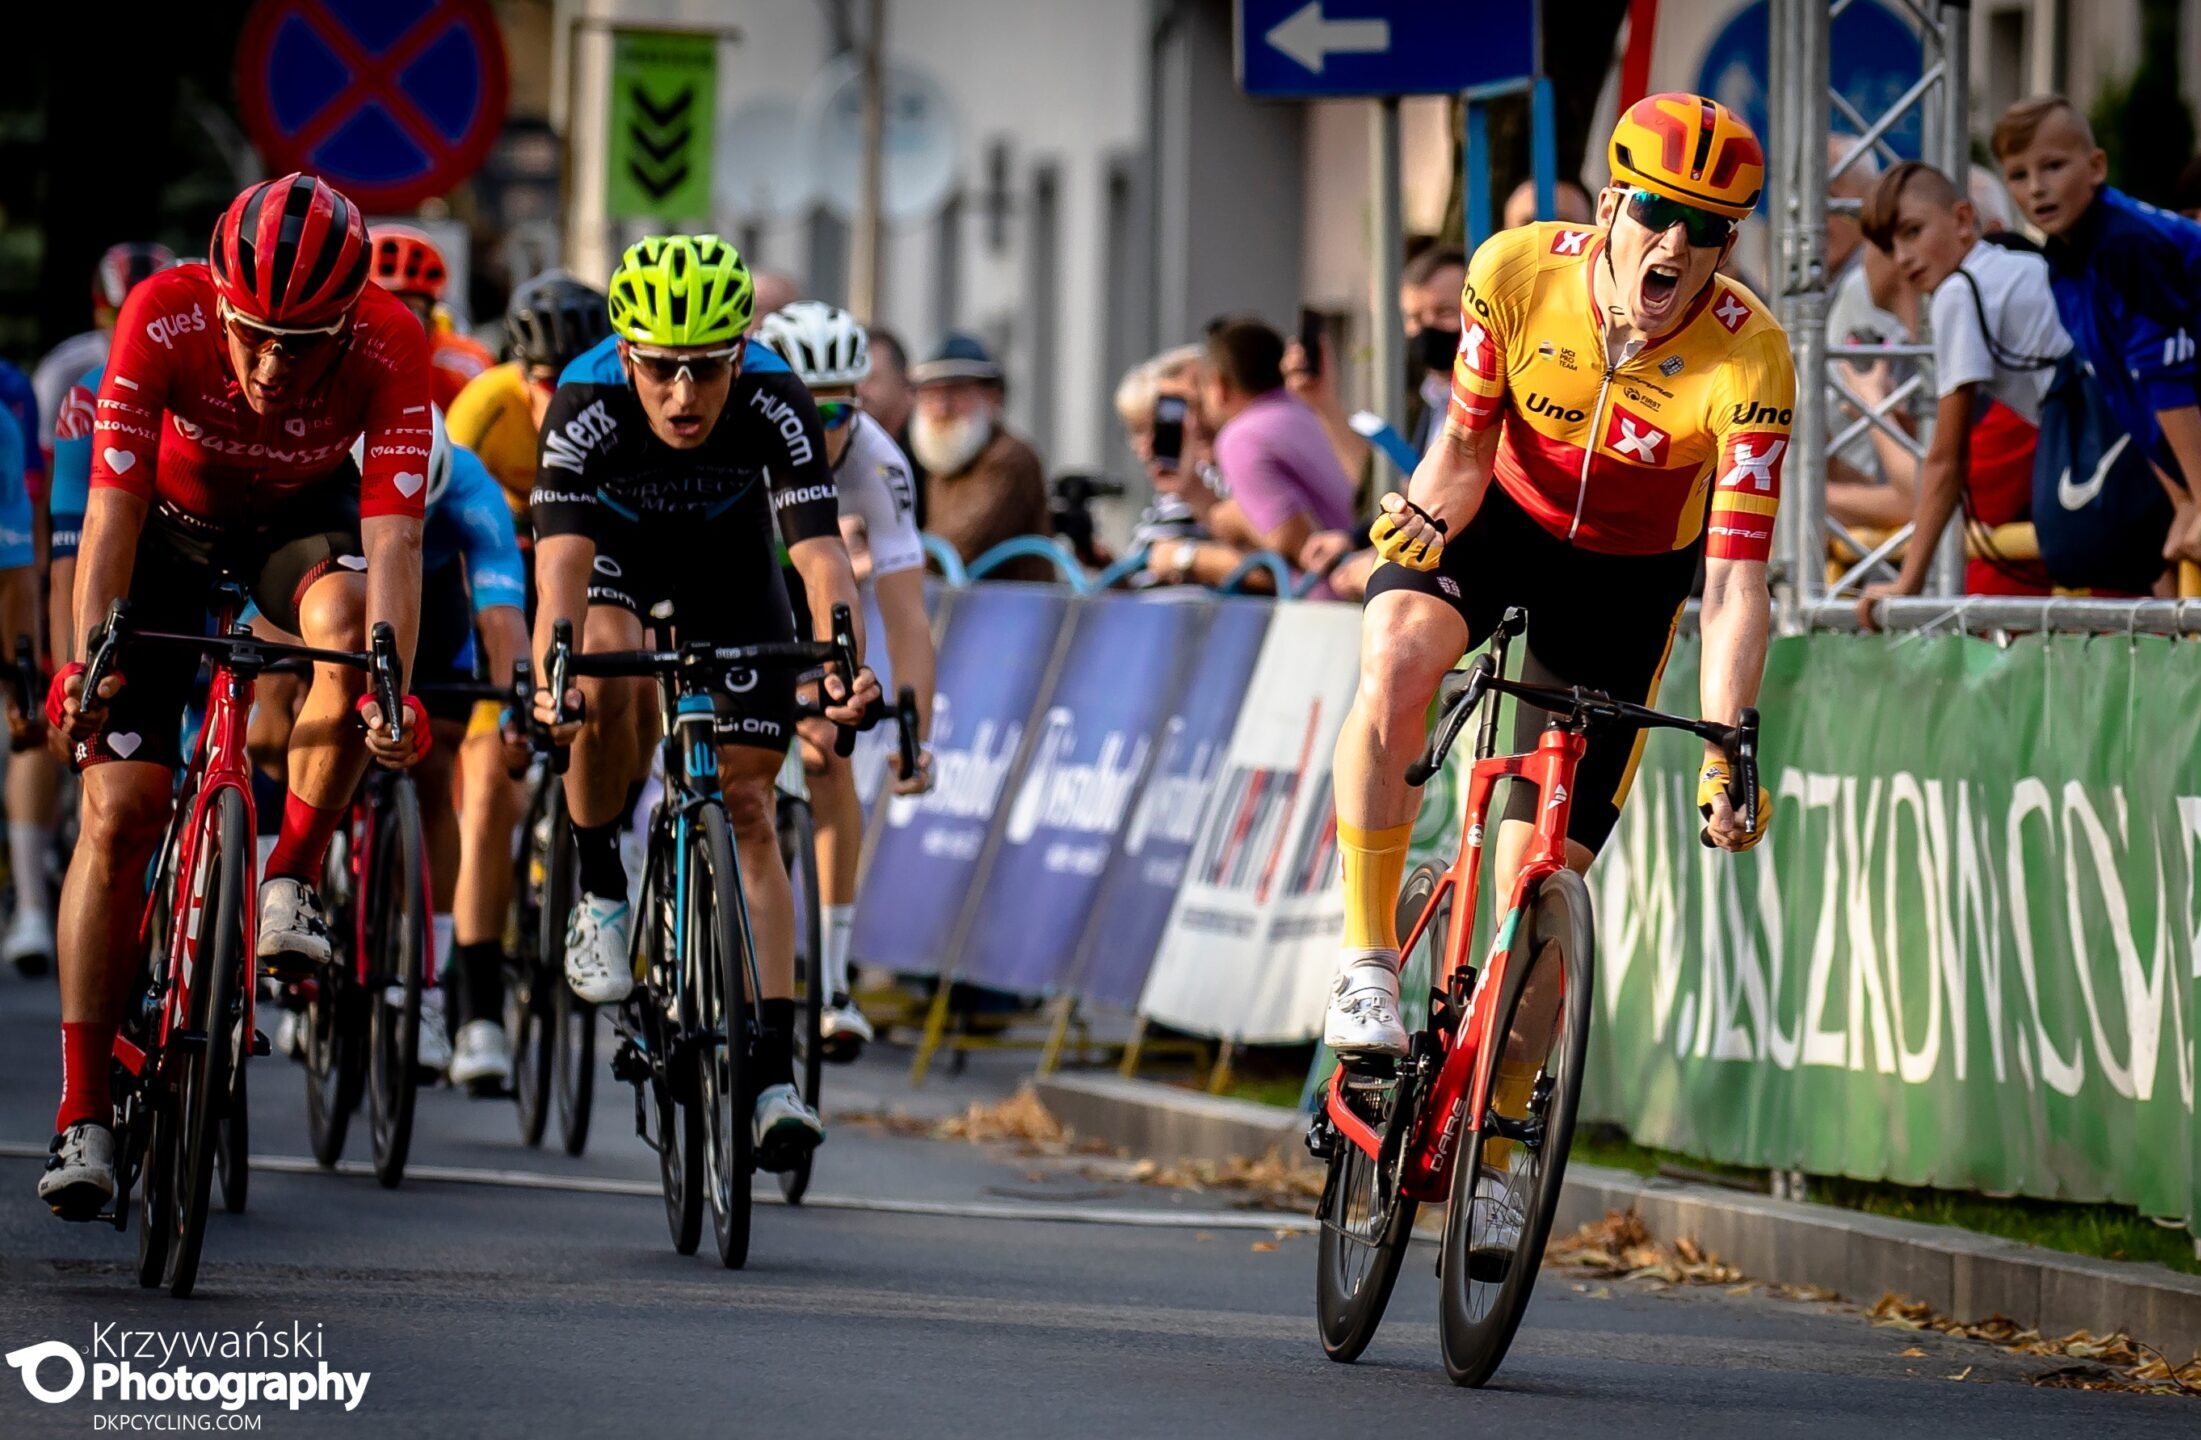 Bałtyk – Karkonosze Tour 2020: etap 2. Rodenberg otwiera wyścig